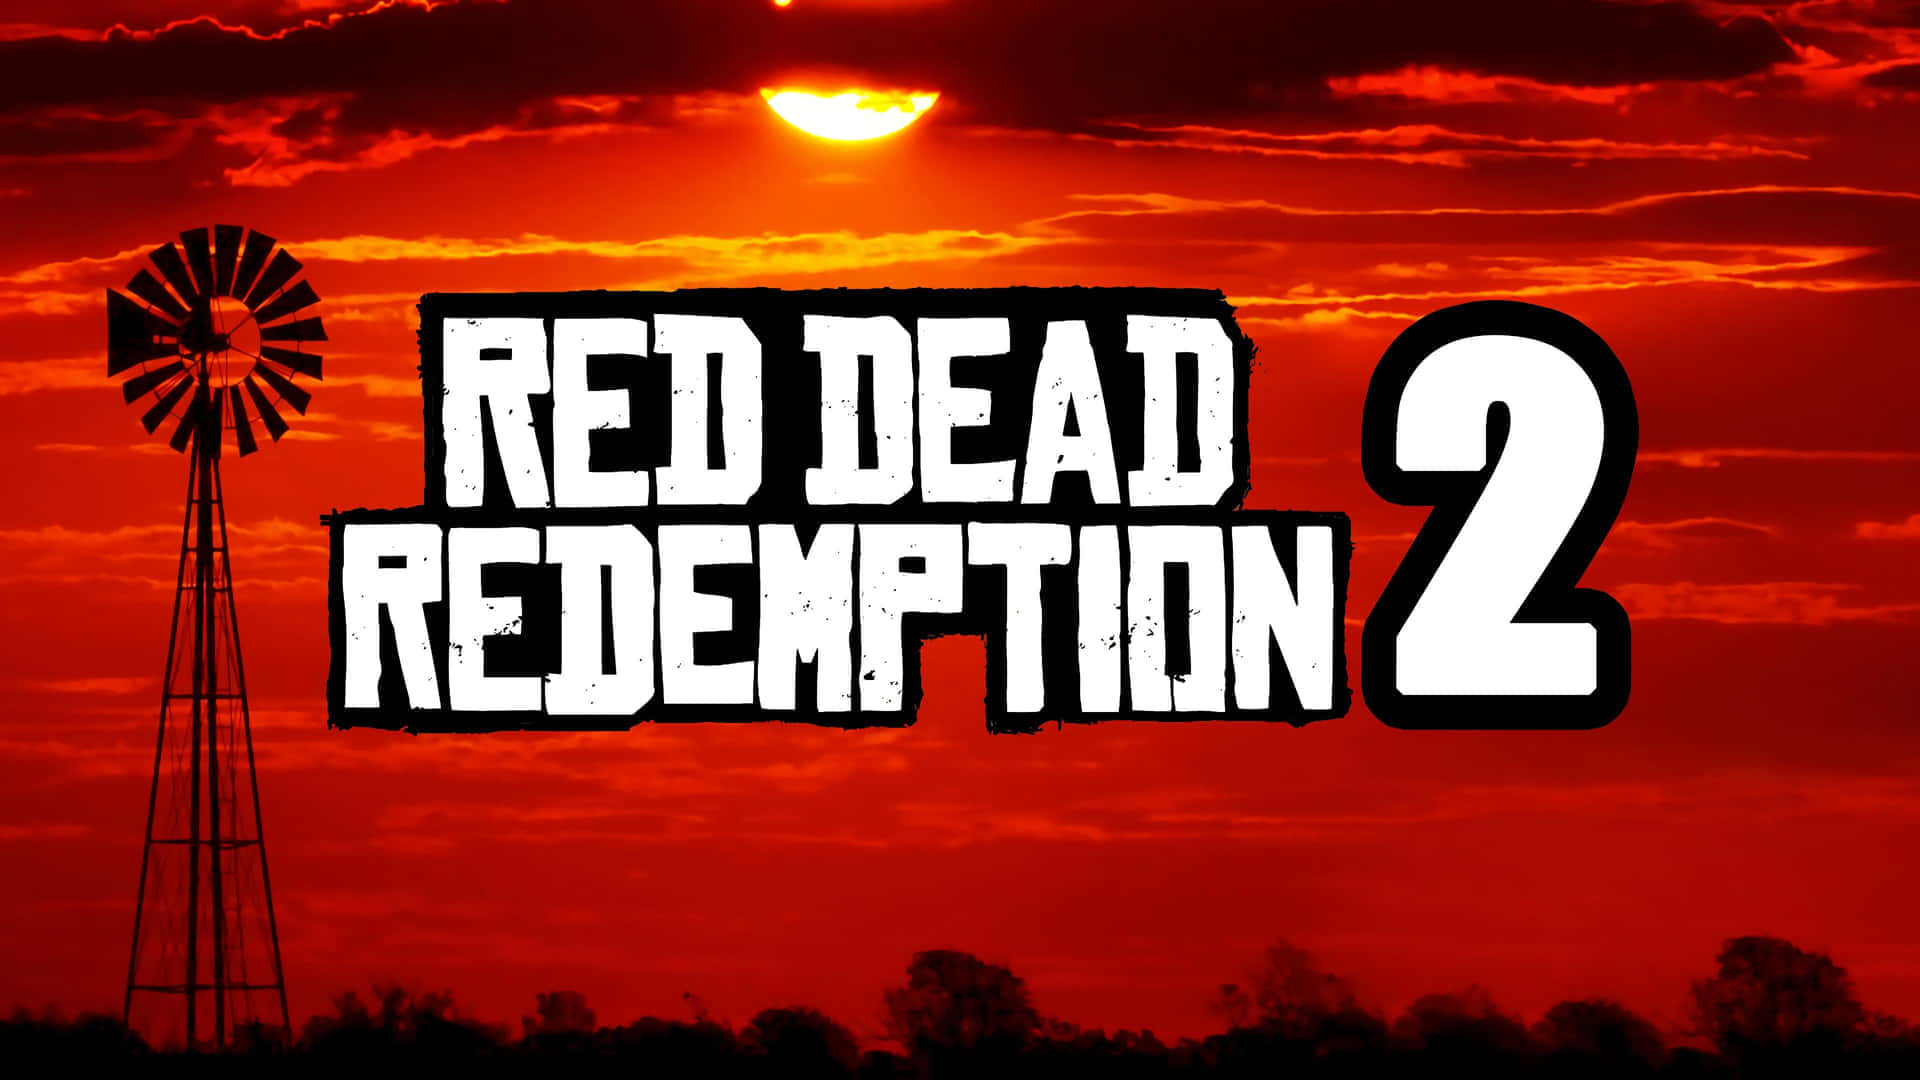 Bildred Dead Redemption 2 - Ett Episkt Äventyr Väntar.